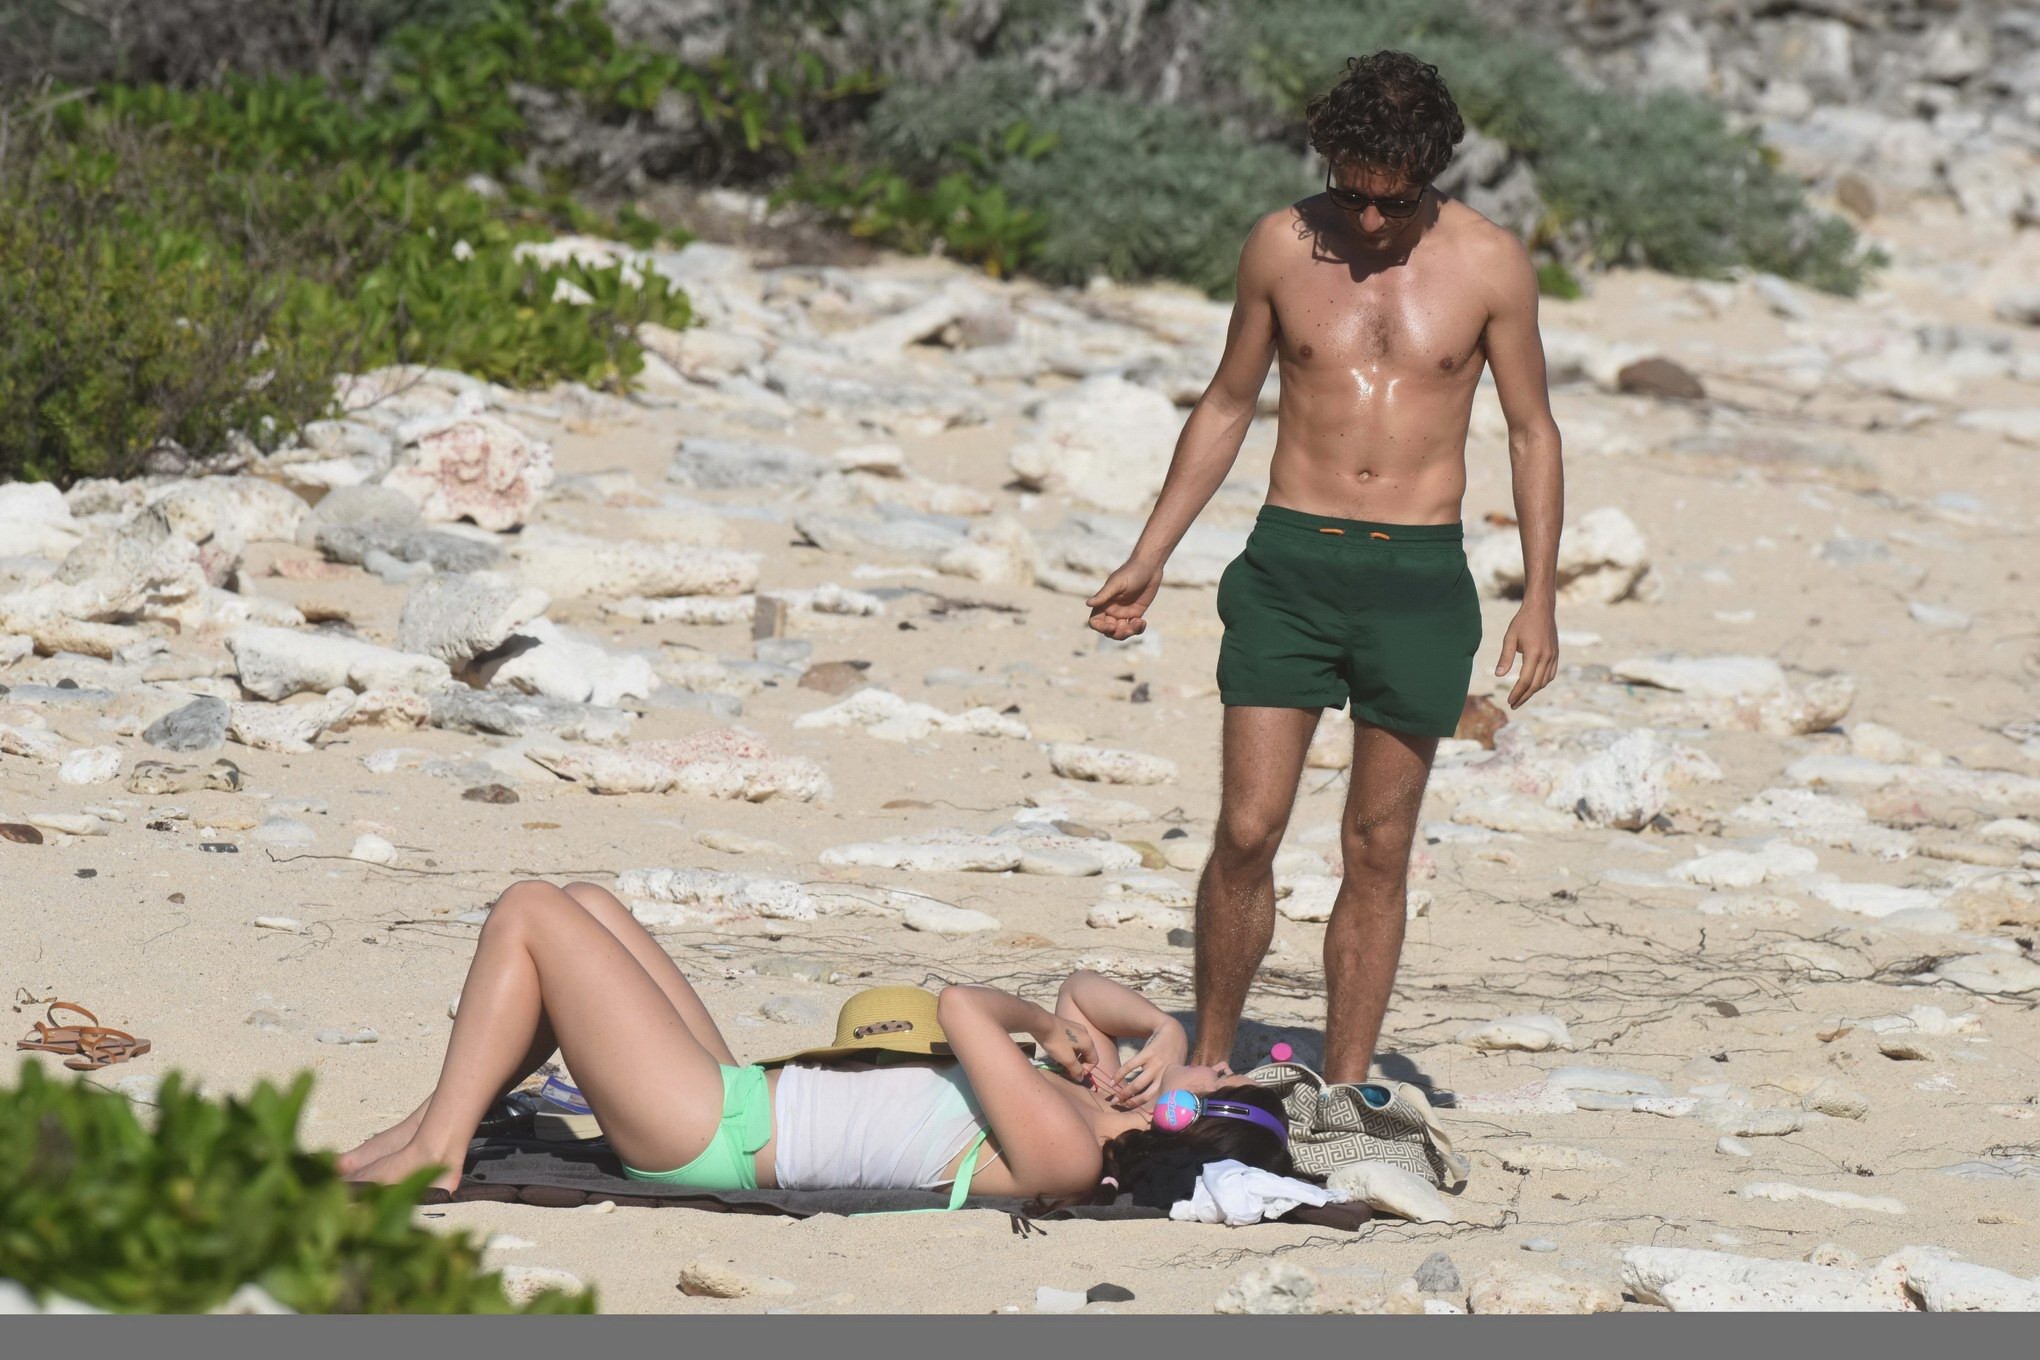 Lana Del Rey wearing green bikini at the beach in StBarts #75176934